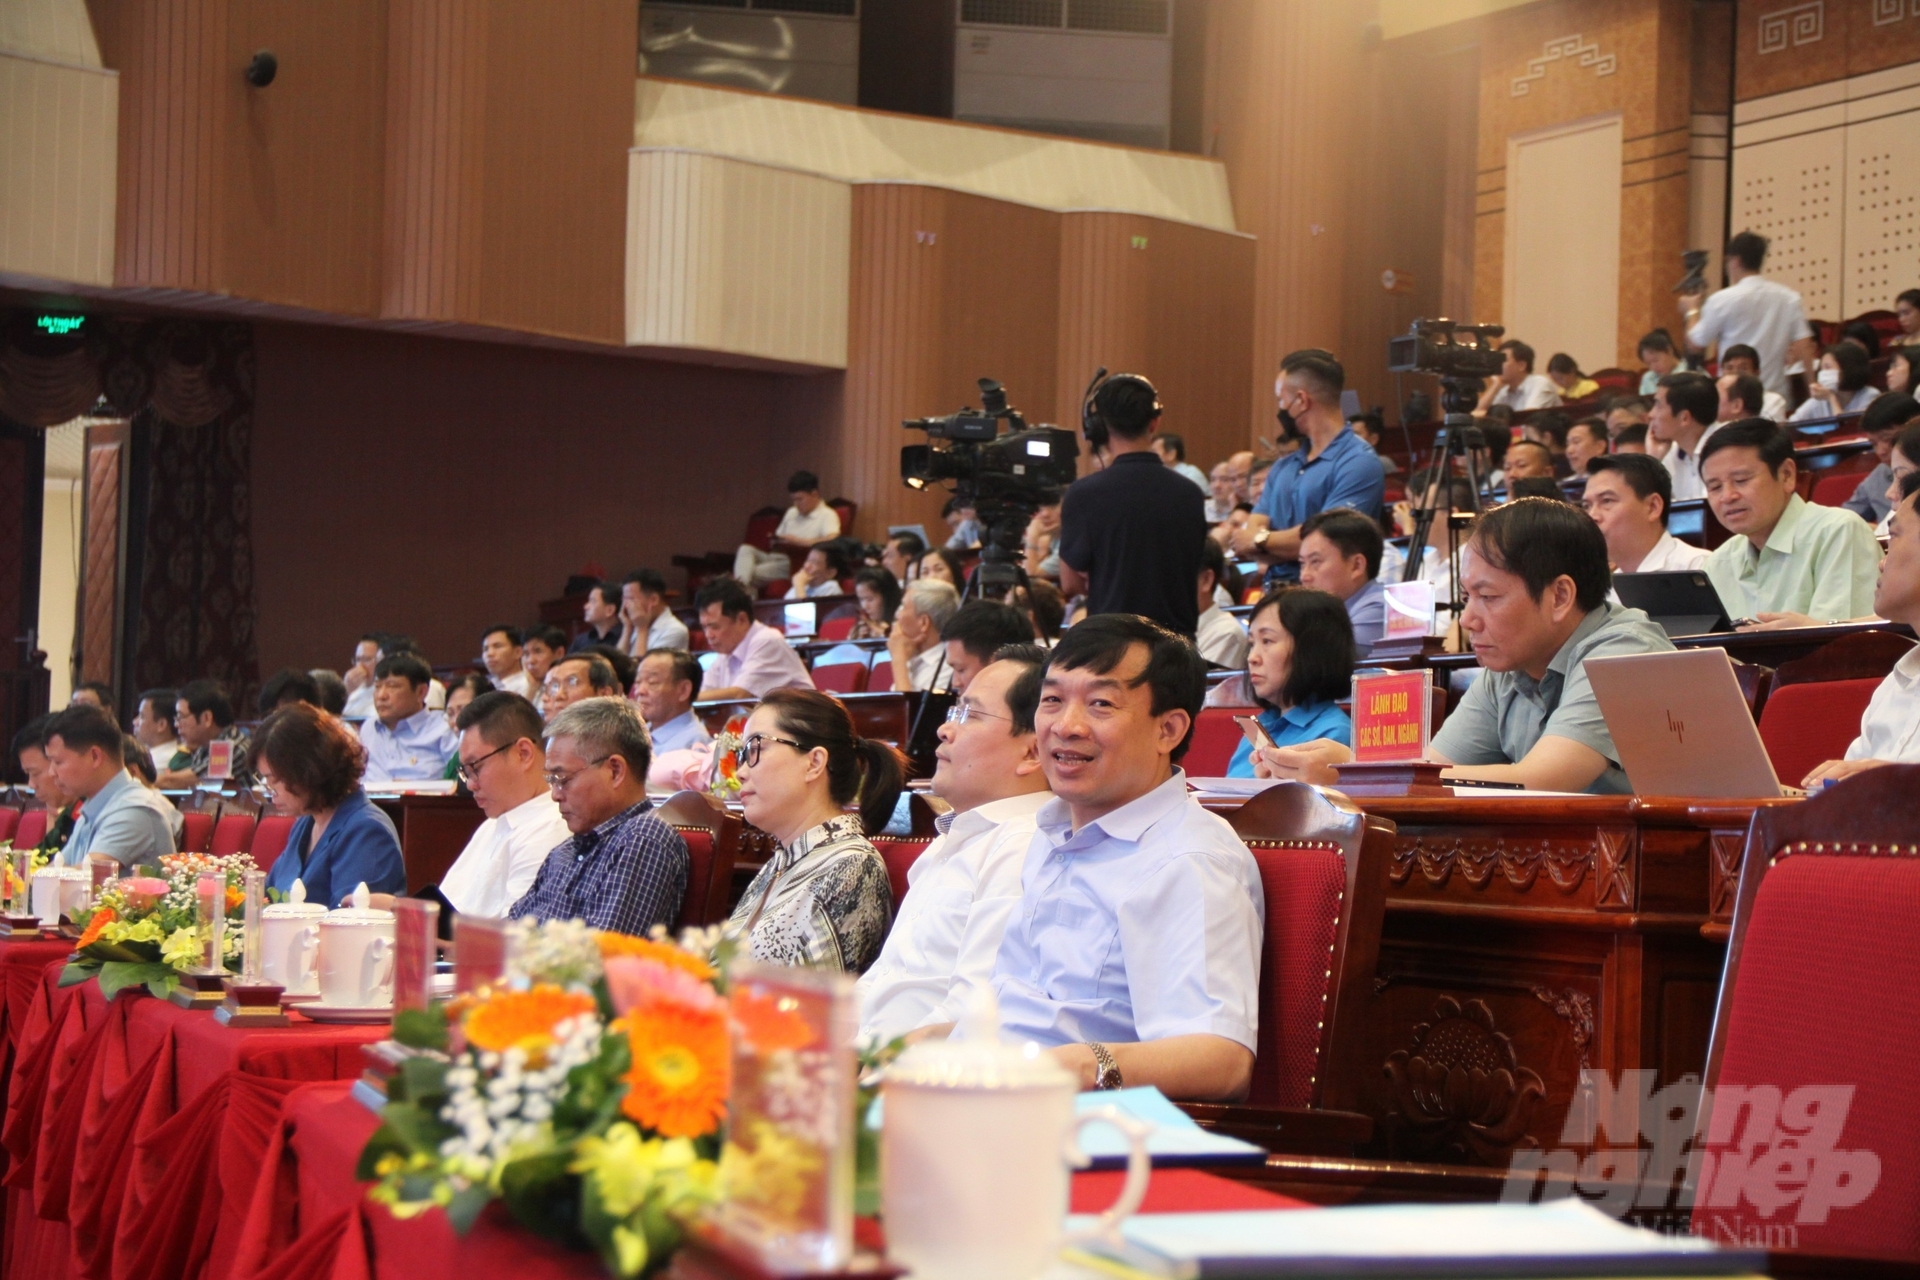 Gần 600 đại diện các doanh nghiệp, hợp tác xã... trên địa bàn tỉnh Bắc Ninh tham dự Hội nghị đối thoại sáng 3/6. Ảnh: Kiên Trung.